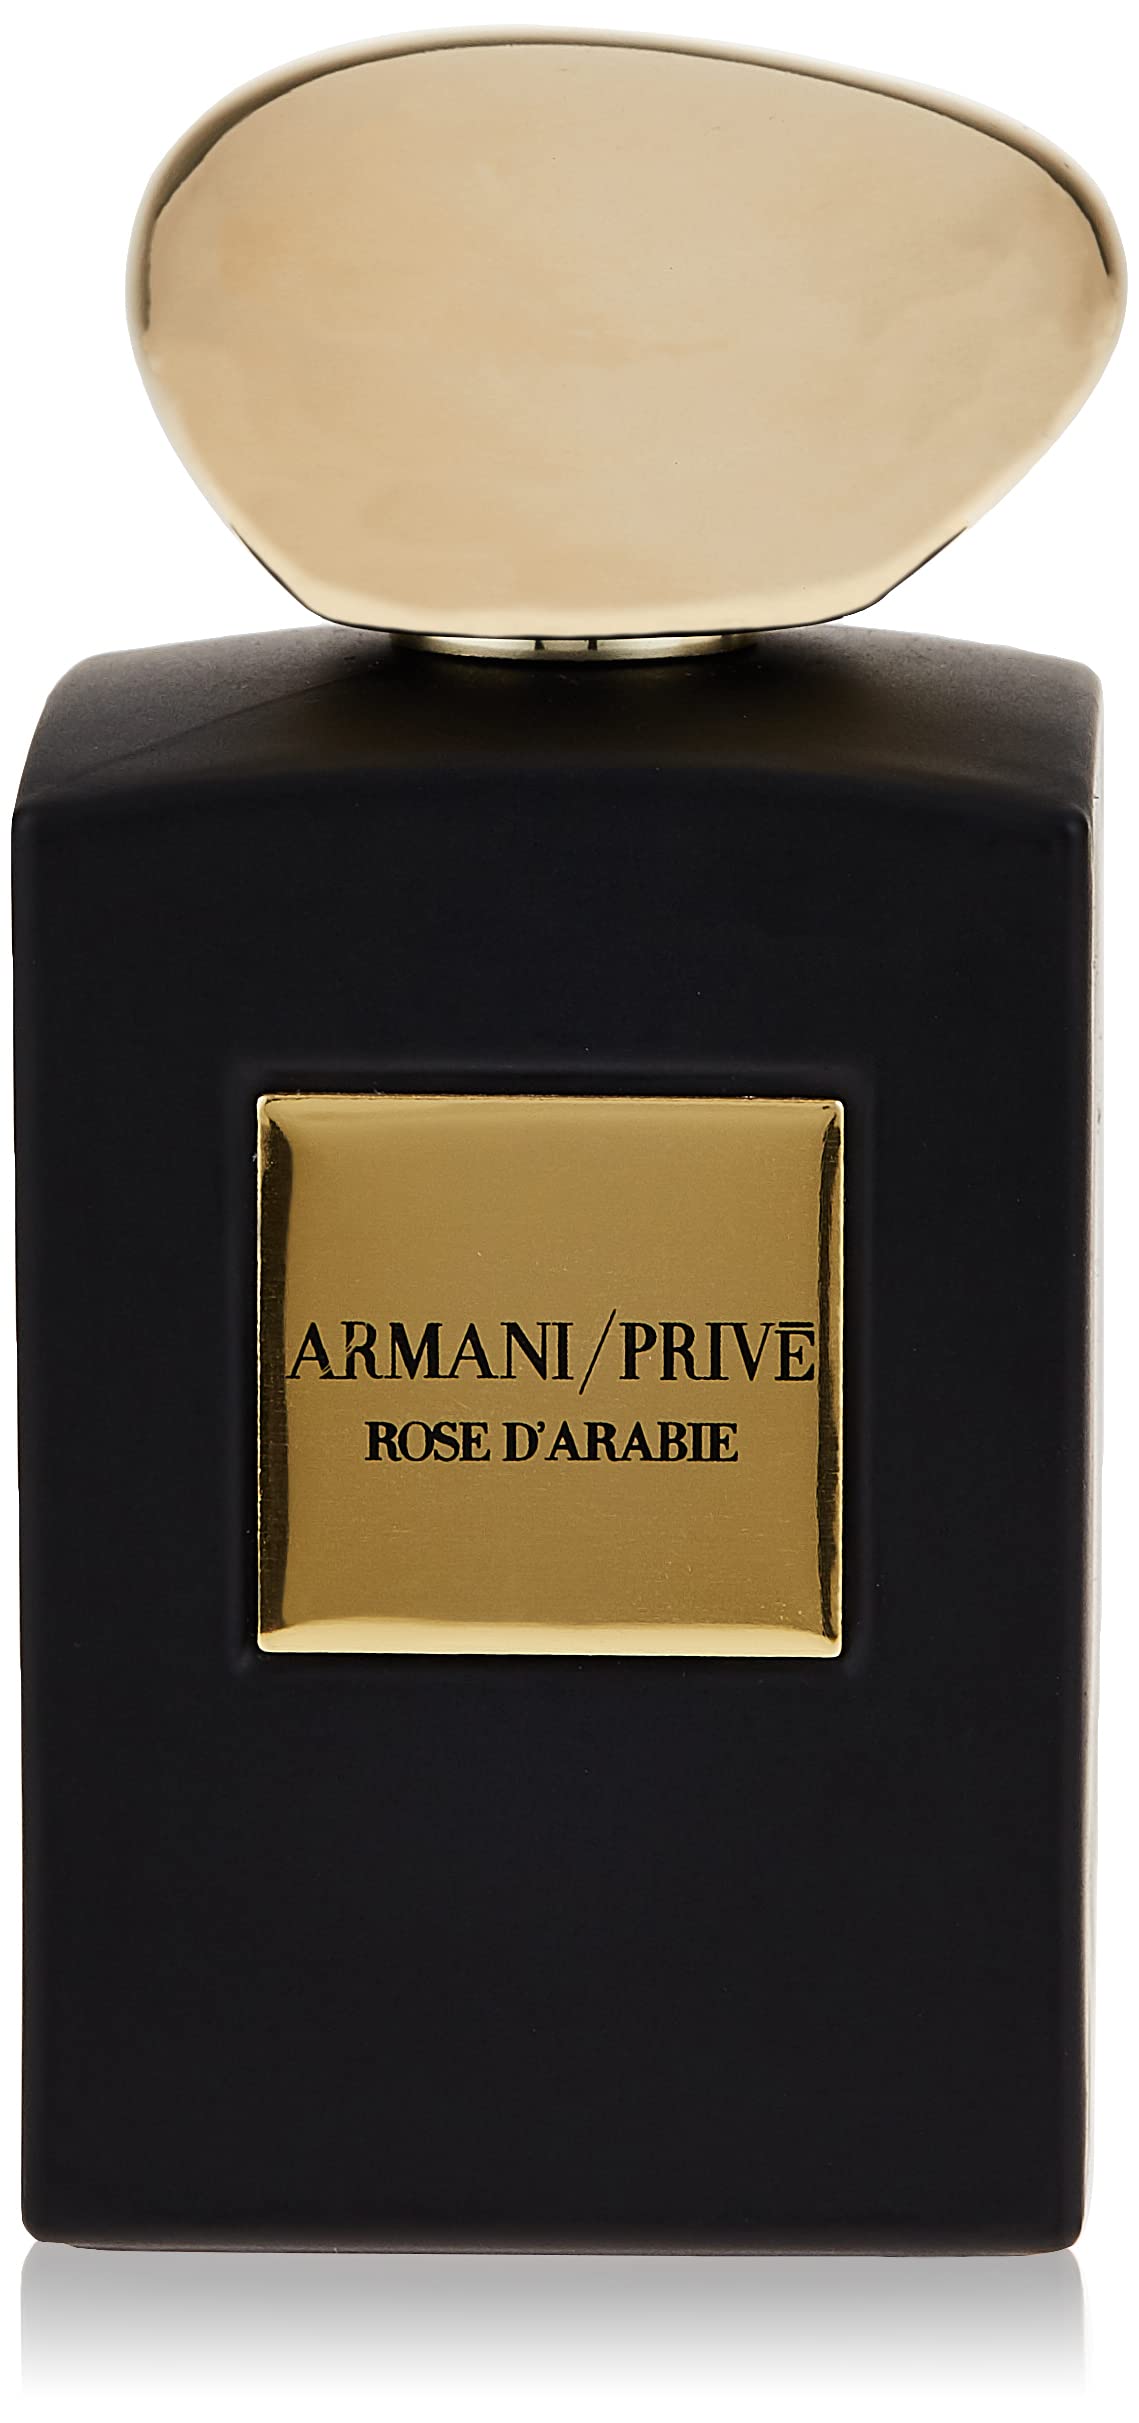 Aprender acerca 53+ imagen giorgio armani perfume prive